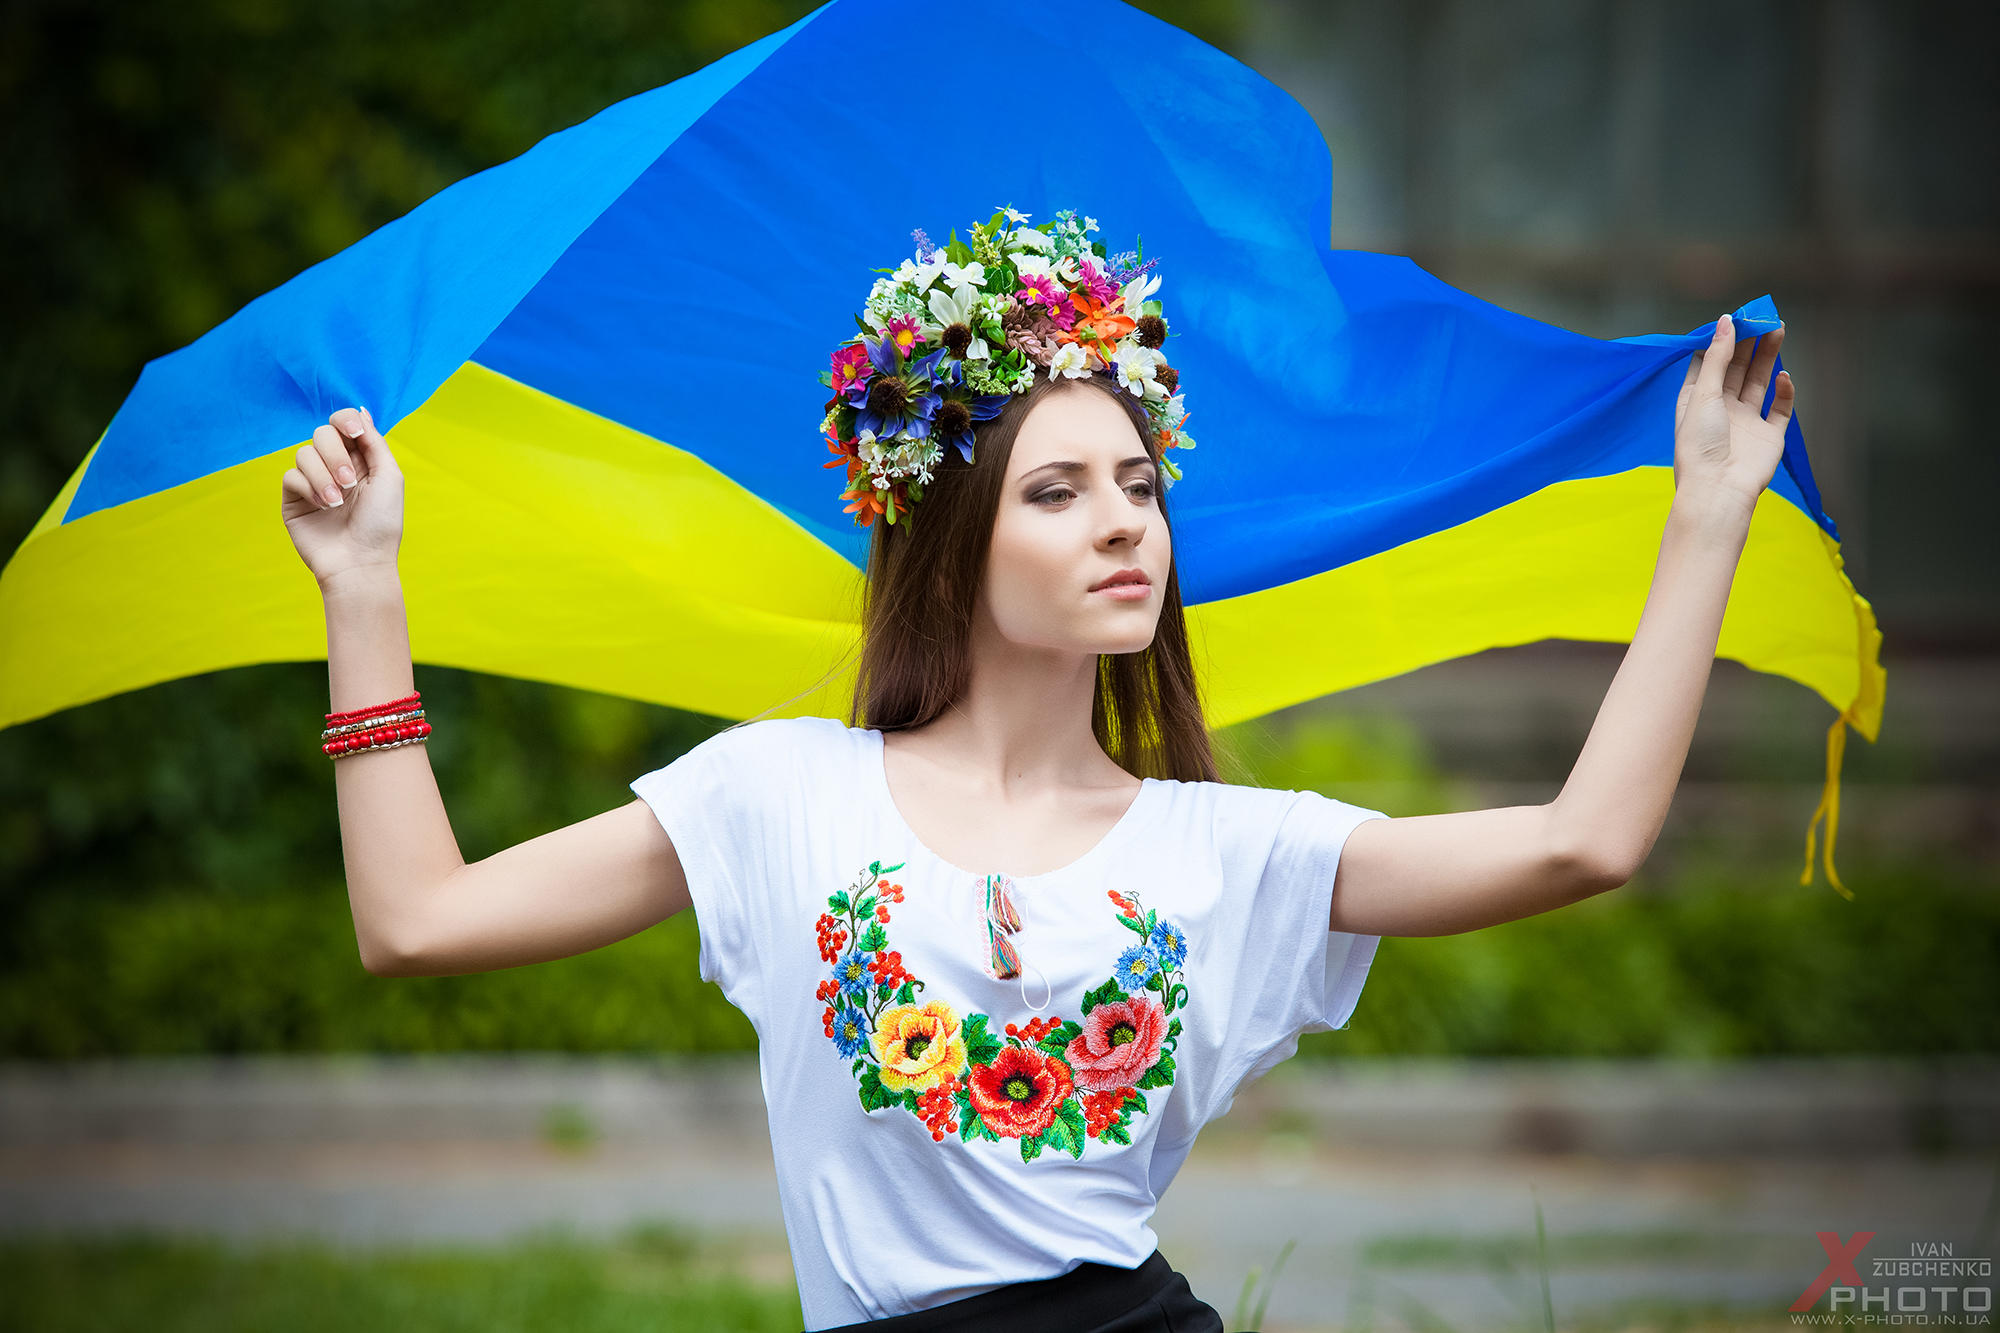 Буде з україна. Україна в серці. З Україною в серці. Ми з України. Мрії України.